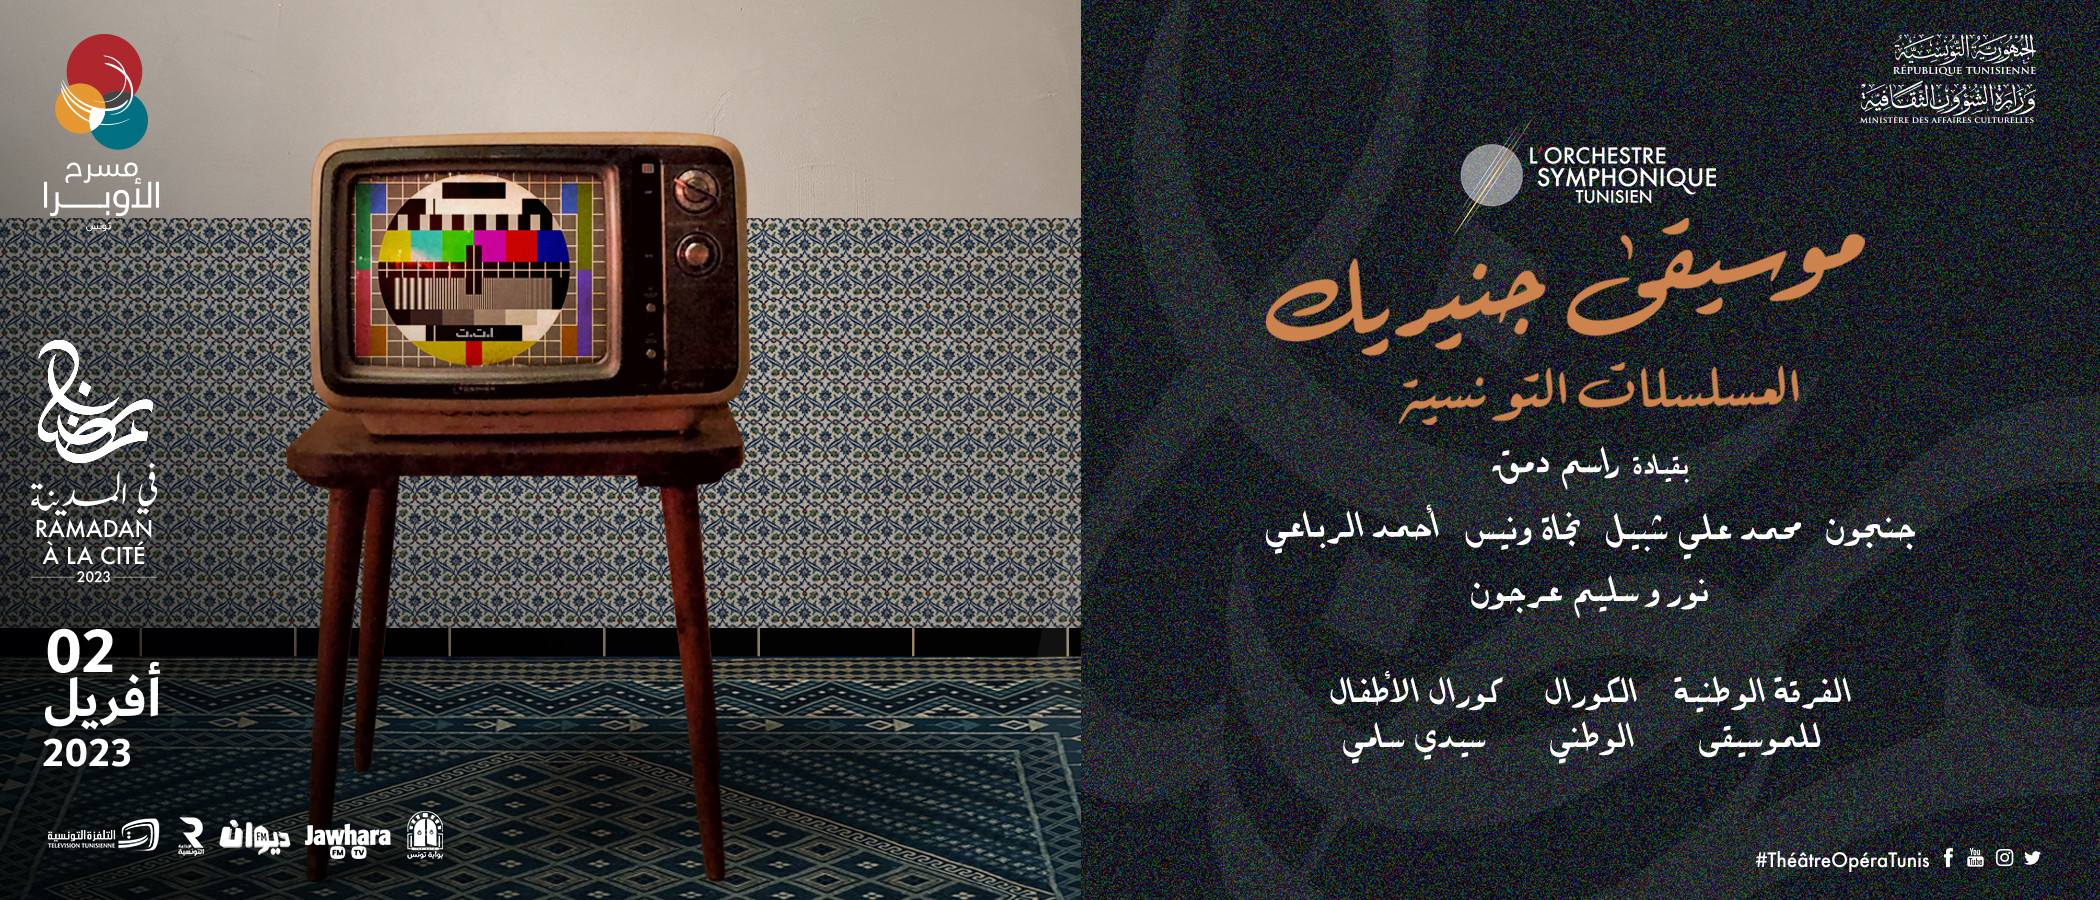 موسيقى جينيريك 
المسلسلات التونسية